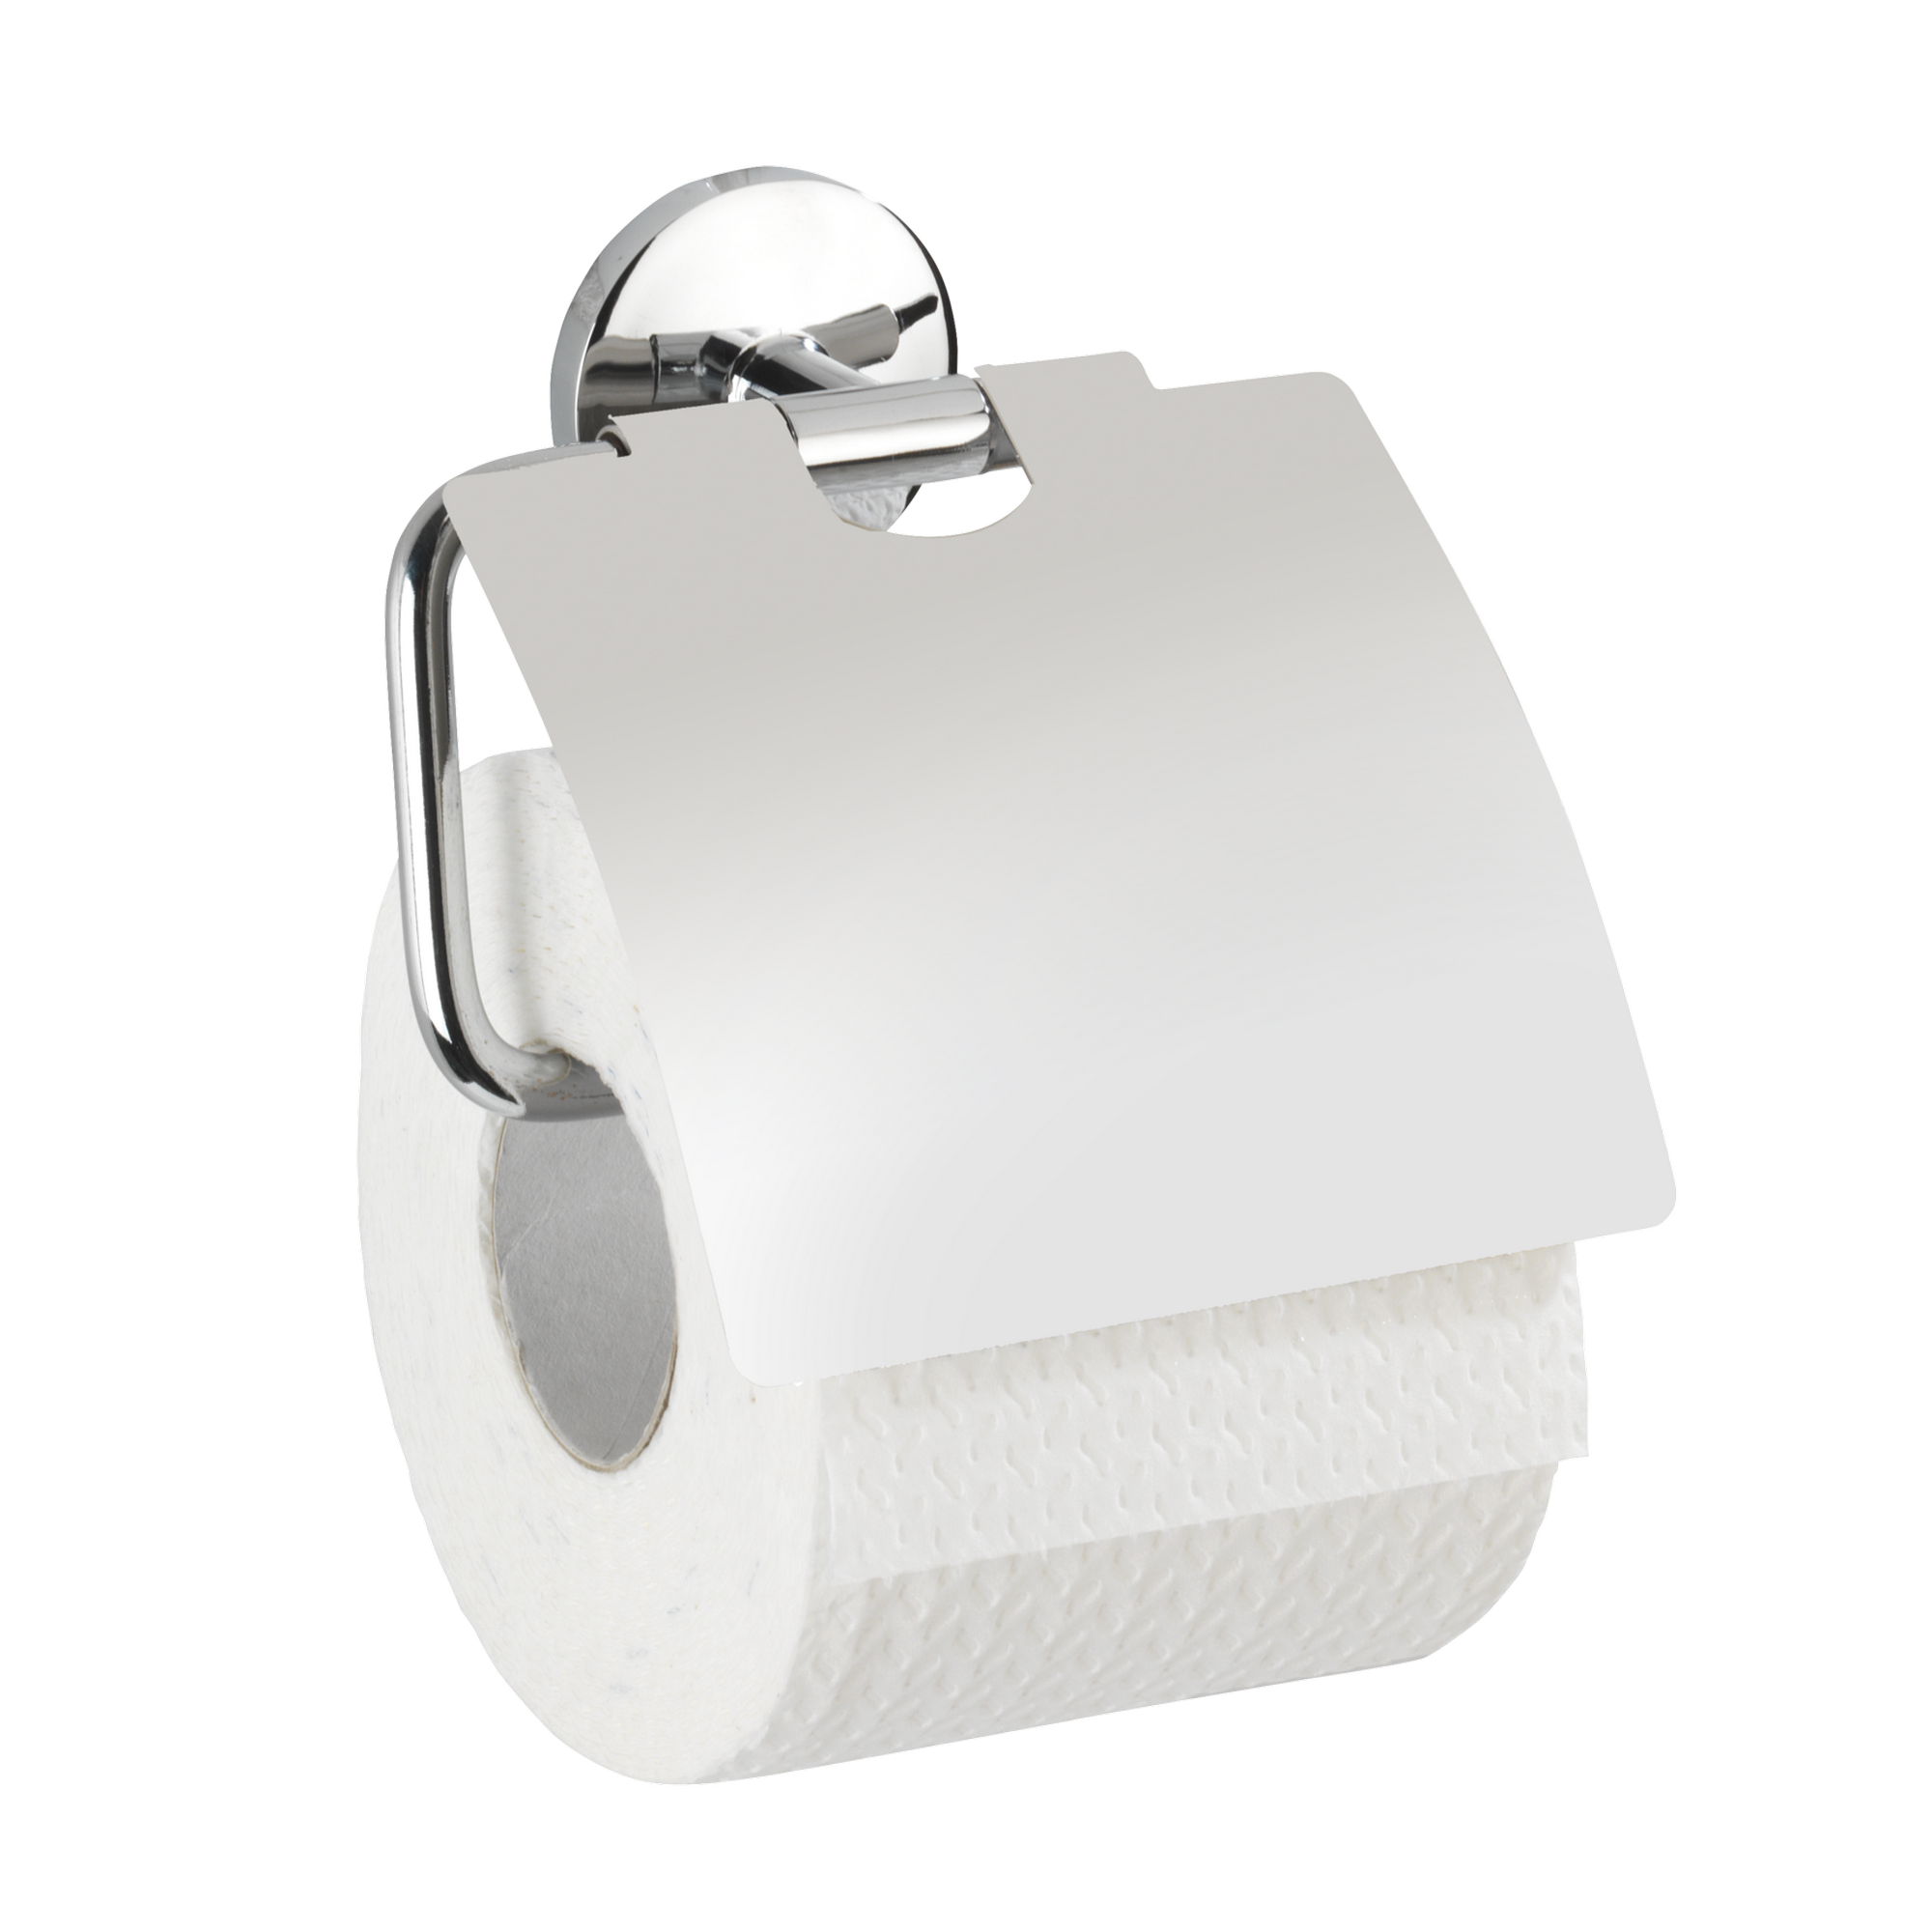 Toilettenpapierhalter 'Cuba Shine' verchromt, mit Deckel + product picture